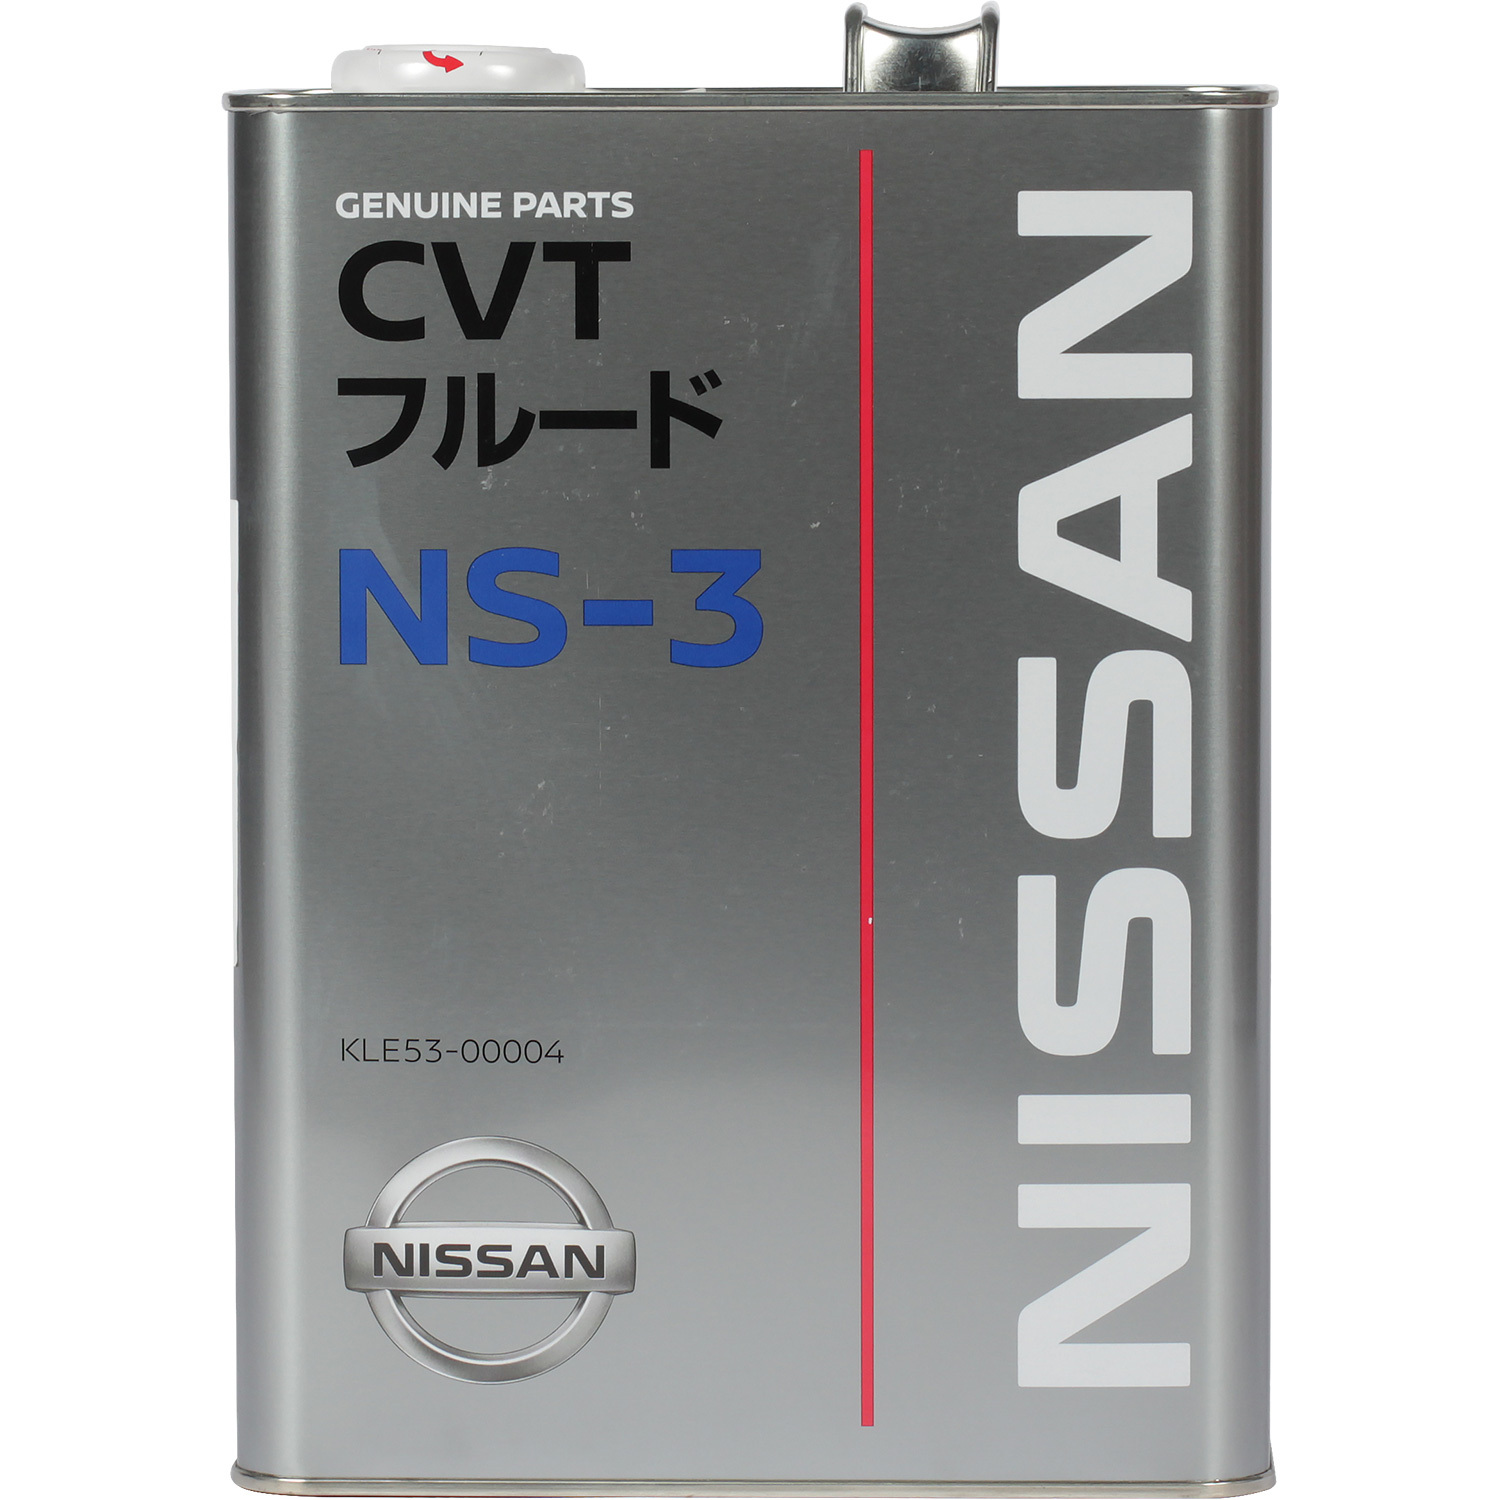 Nissan Масло трансмиссионное NISSAN CVT FLUID NS-3 4л f011e re0f10e cvt шаговый двигатель трансмиссии подходит для nissan altima 2007 л 2012